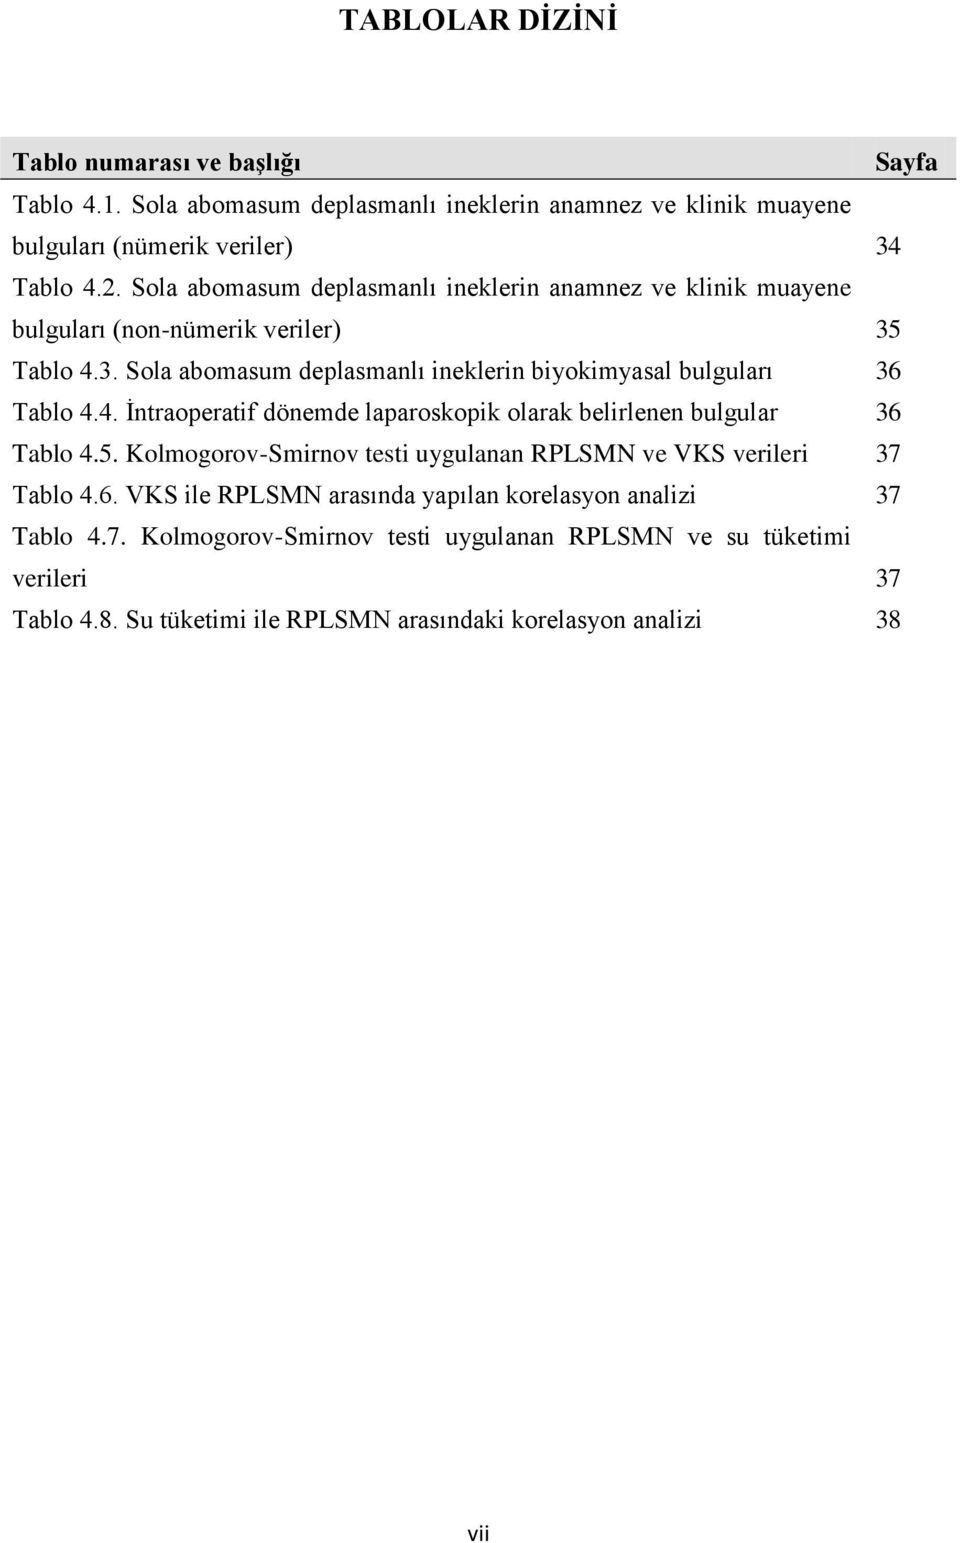 4. Ġntraoperatif dönemde laparoskopik olarak belirlenen bulgular 36 Tablo 4.5. Kolmogorov-Smirnov testi uygulanan RPLSMN ve VKS verileri 37 Tablo 4.6. VKS ile RPLSMN arasında yapılan korelasyon analizi 37 Tablo 4.